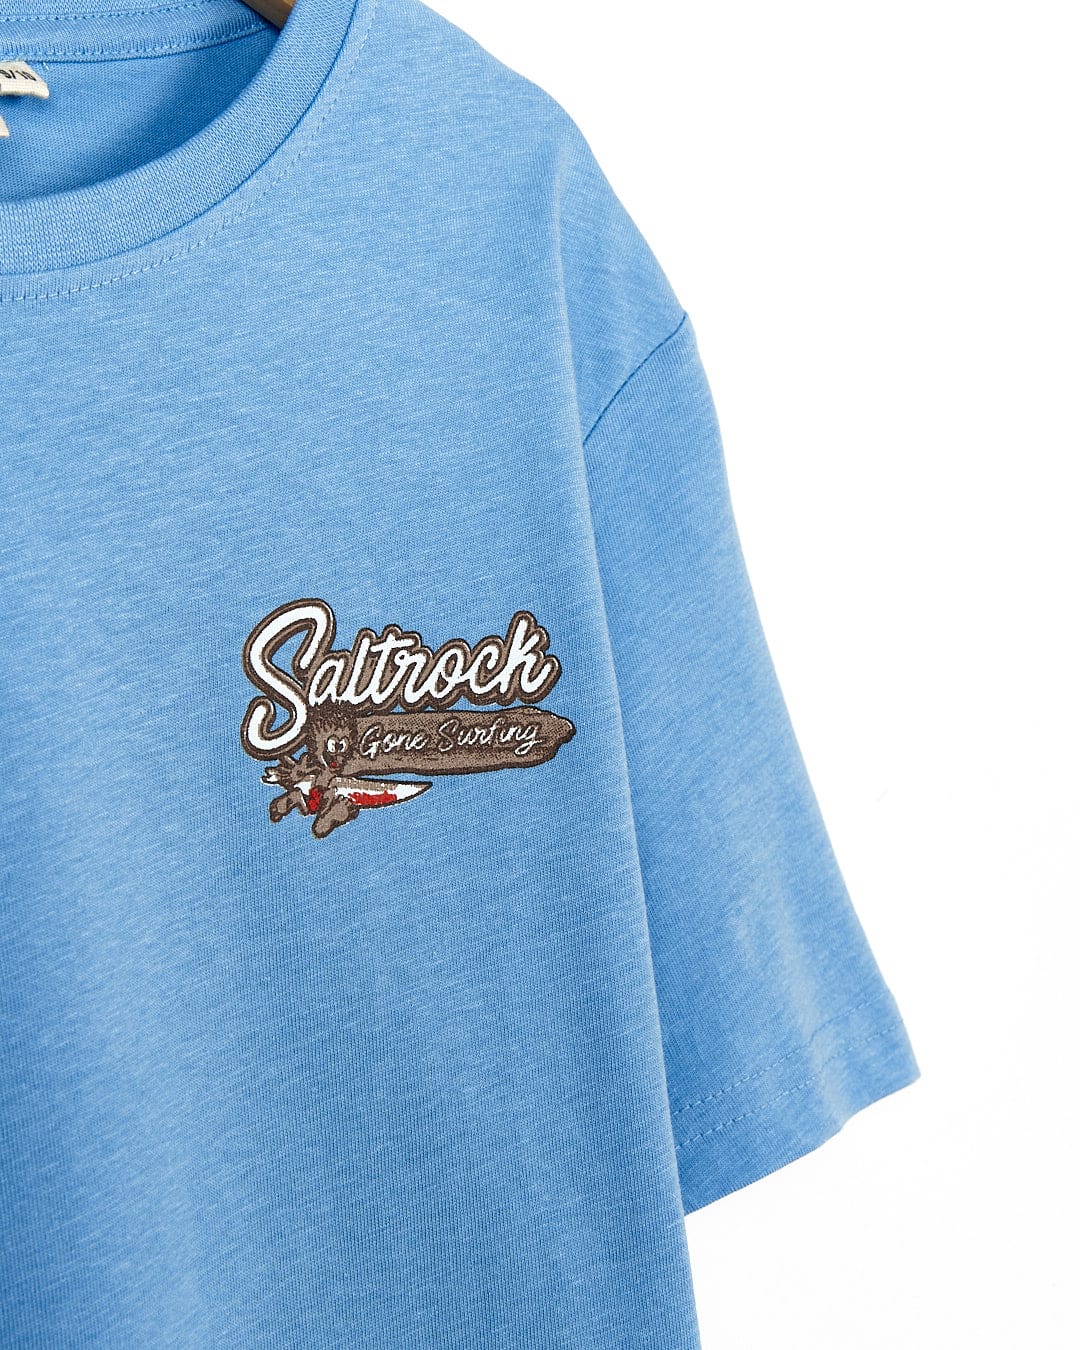 A Saltrock - Kids Short Sleeve T-Shirt - Light Blue with a brown logo on it.